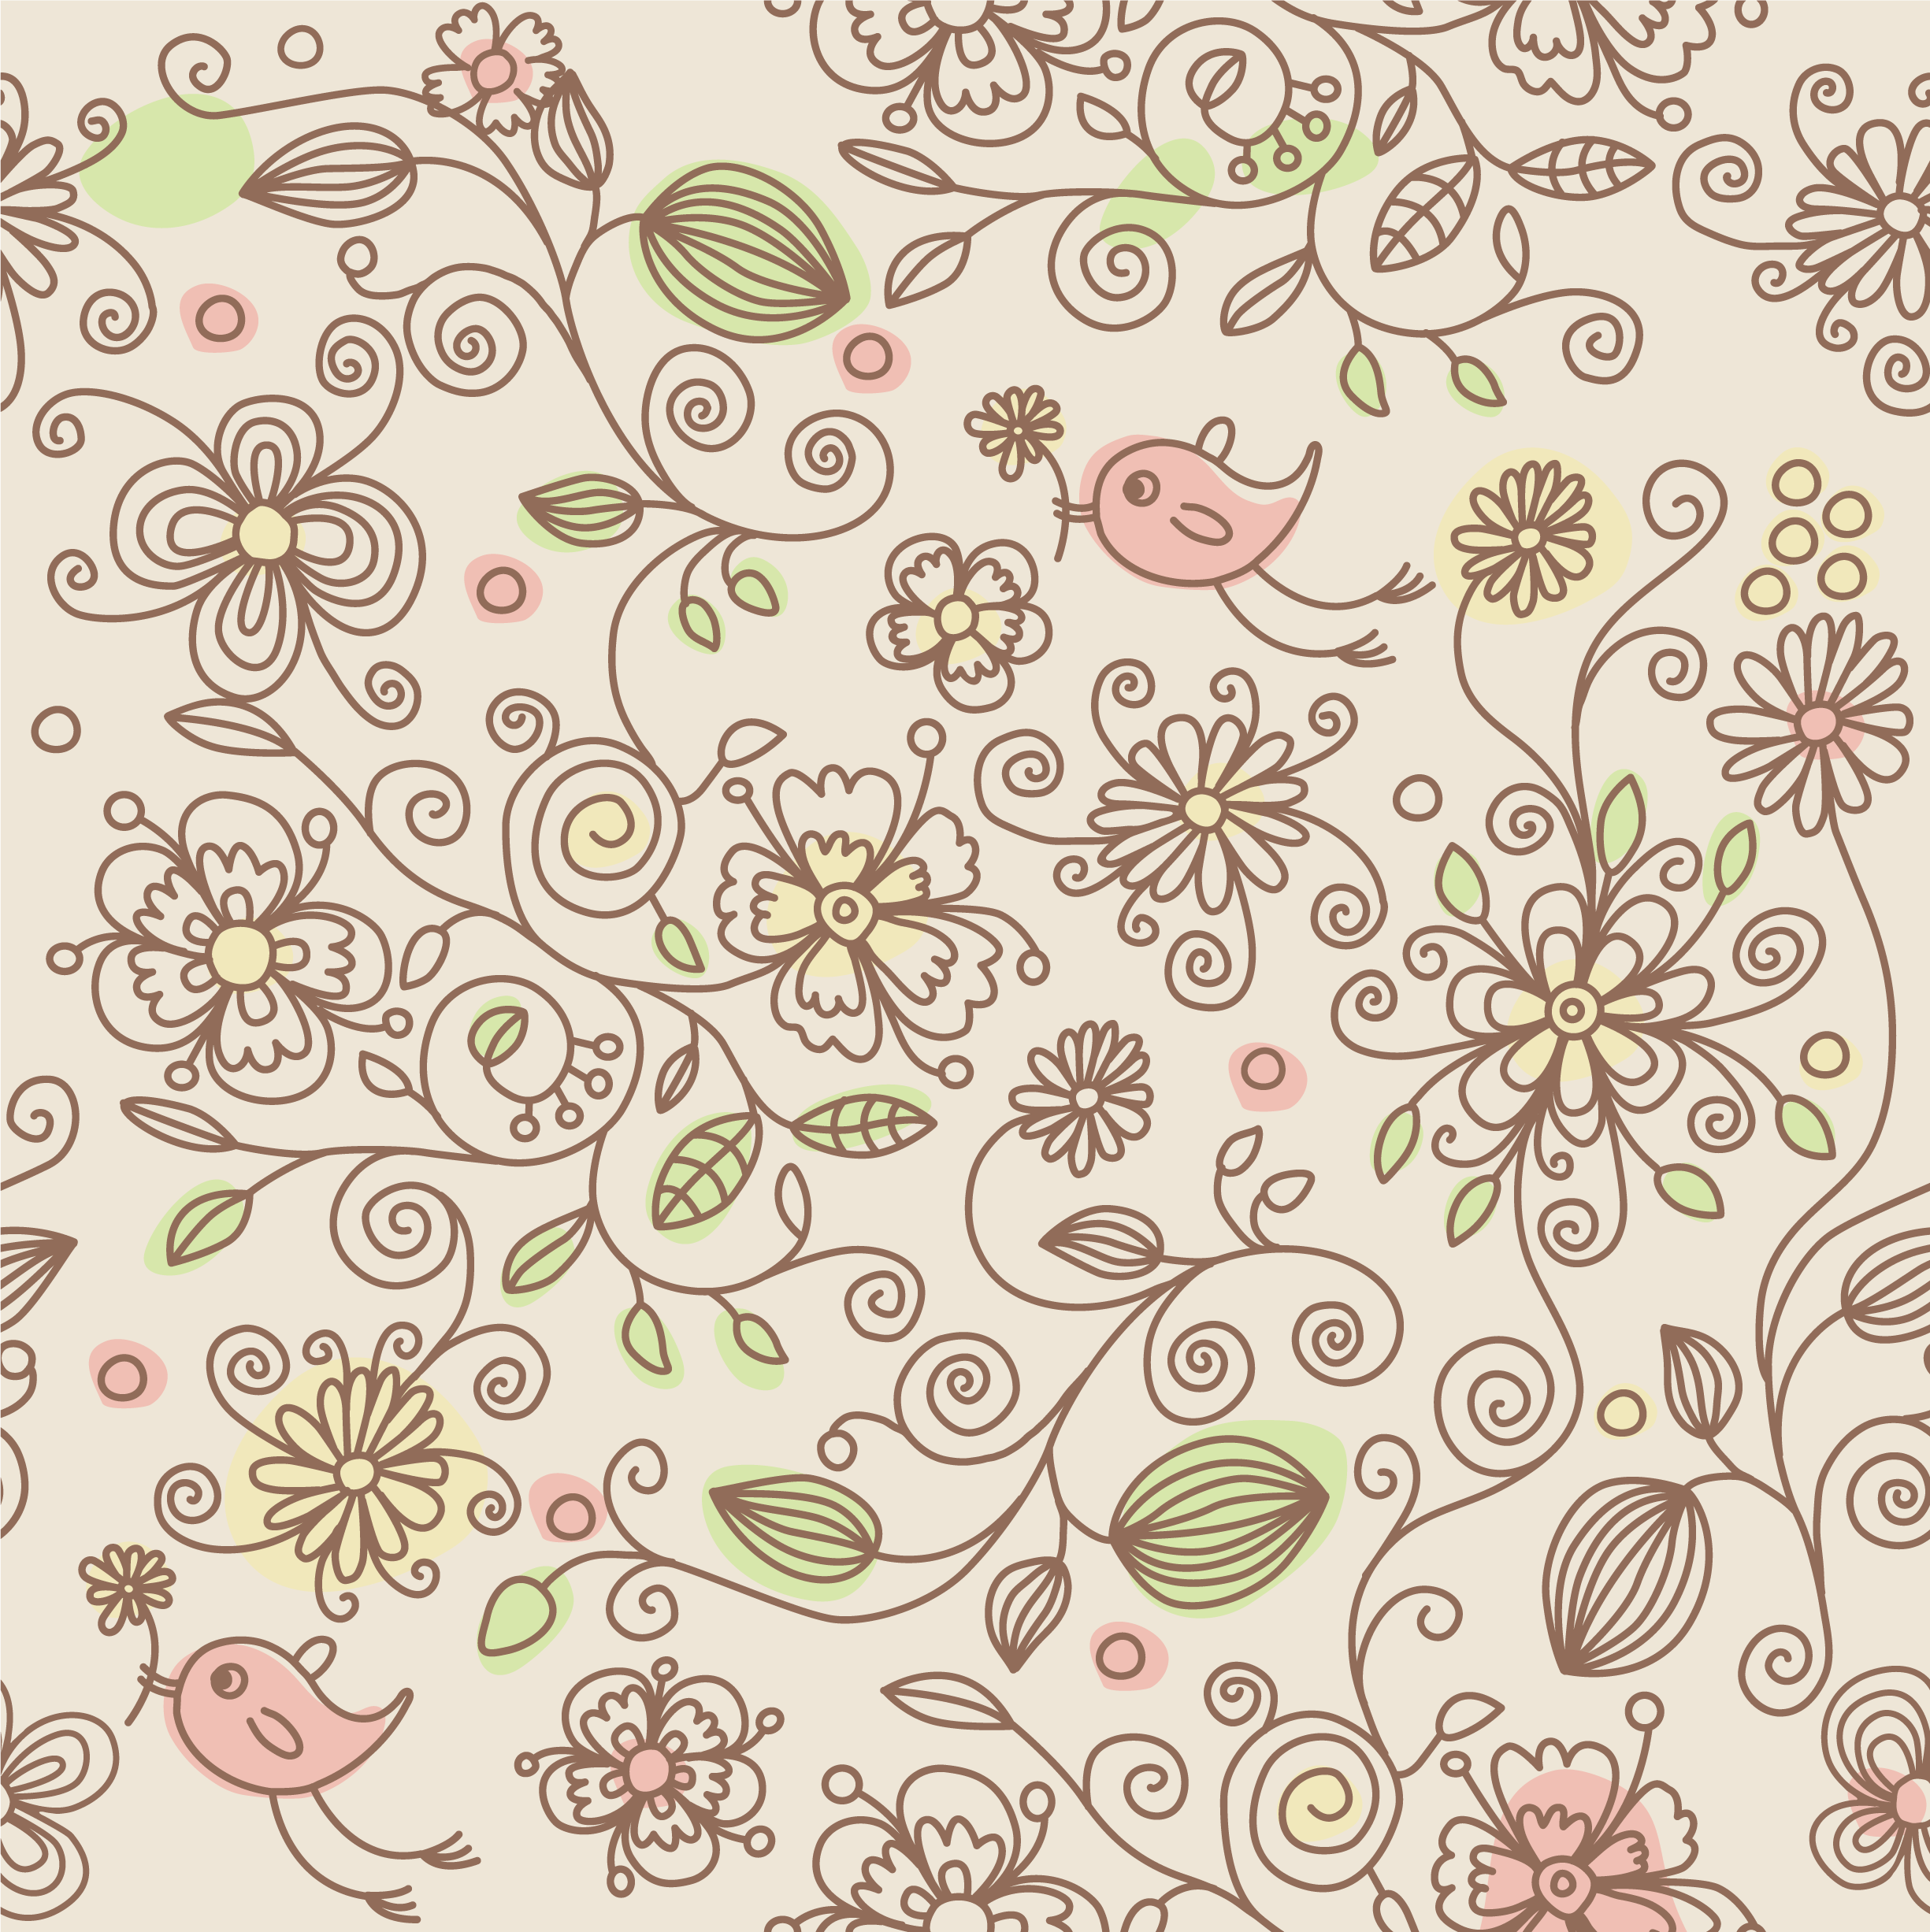 壁紙 背景イラスト 花の模様 柄 パターン No 172 花を運ぶ鳥 ピンク